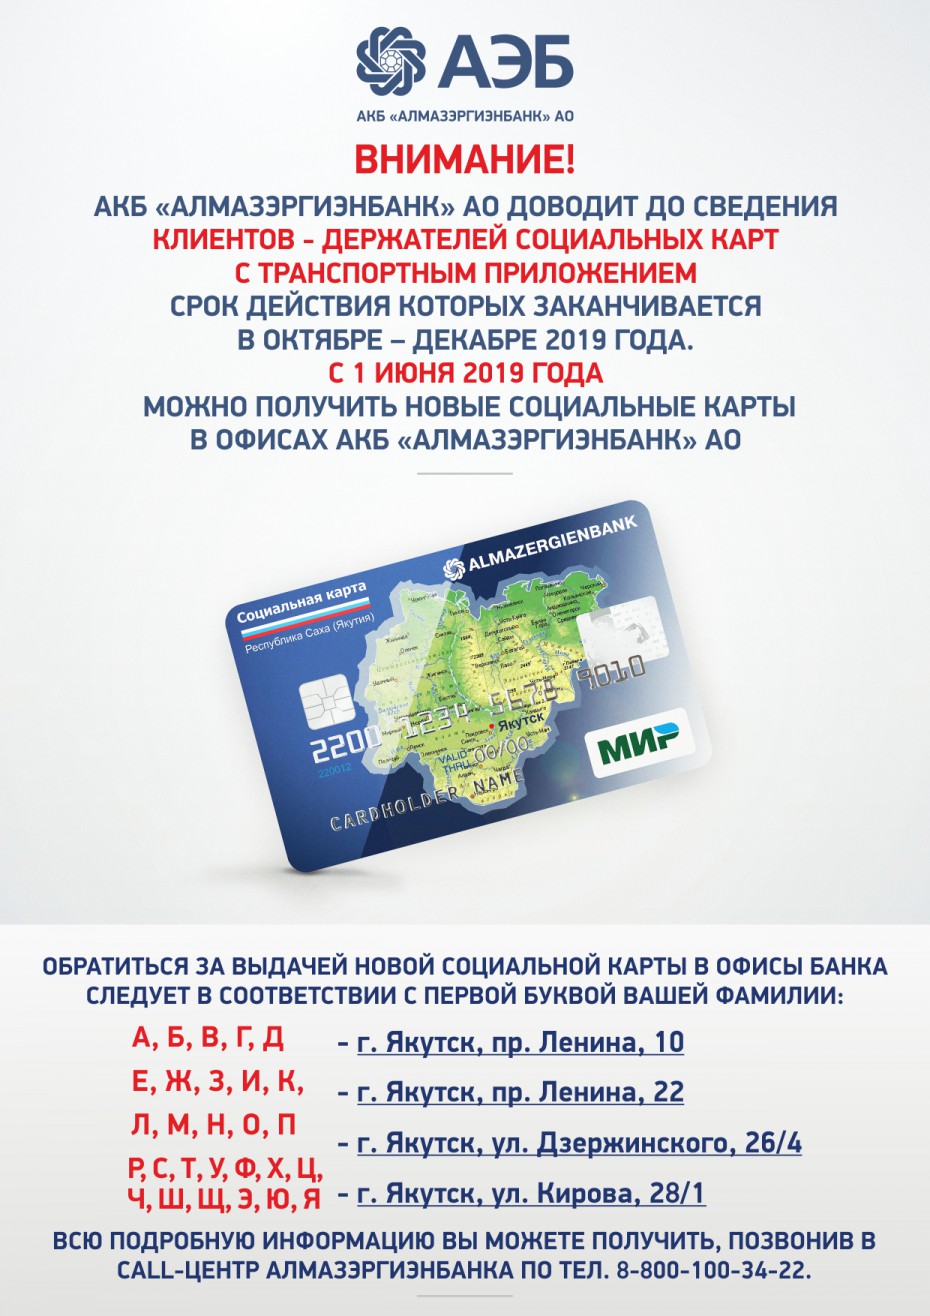 АКБ «Алмазэргиэнбанк» извещает держателей социальных карт, срок действия которых заканчивается в октябре-декабре 2019 года